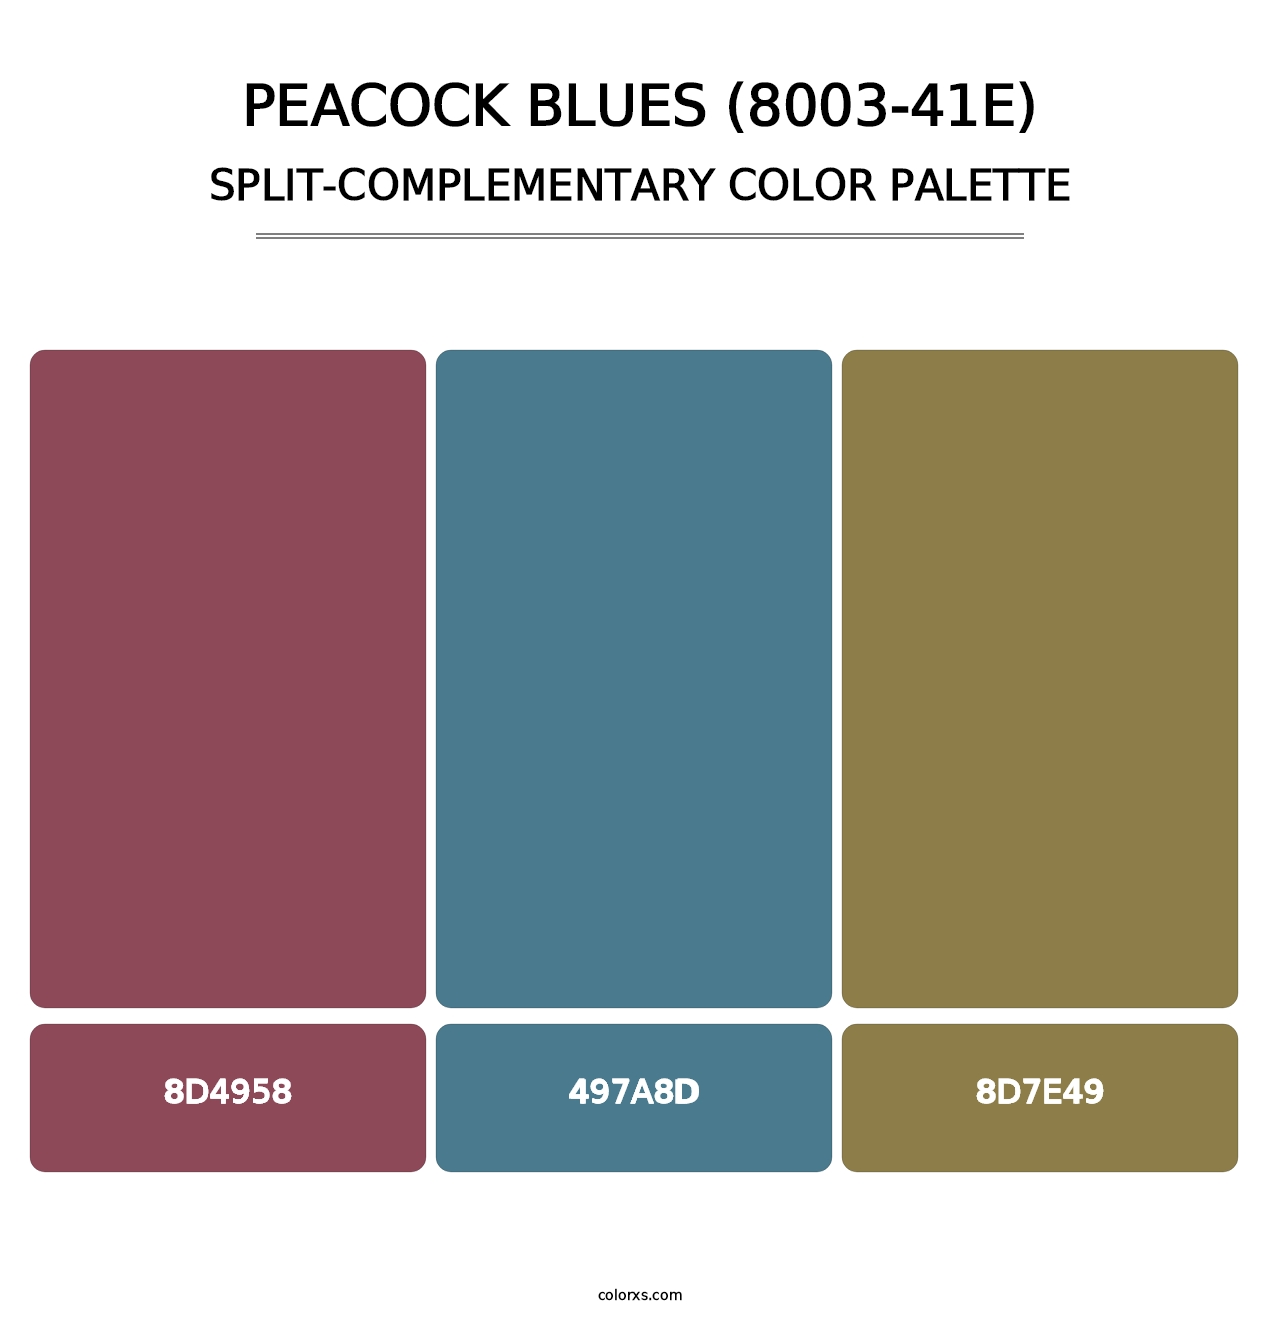 Peacock Blues (8003-41E) - Split-Complementary Color Palette